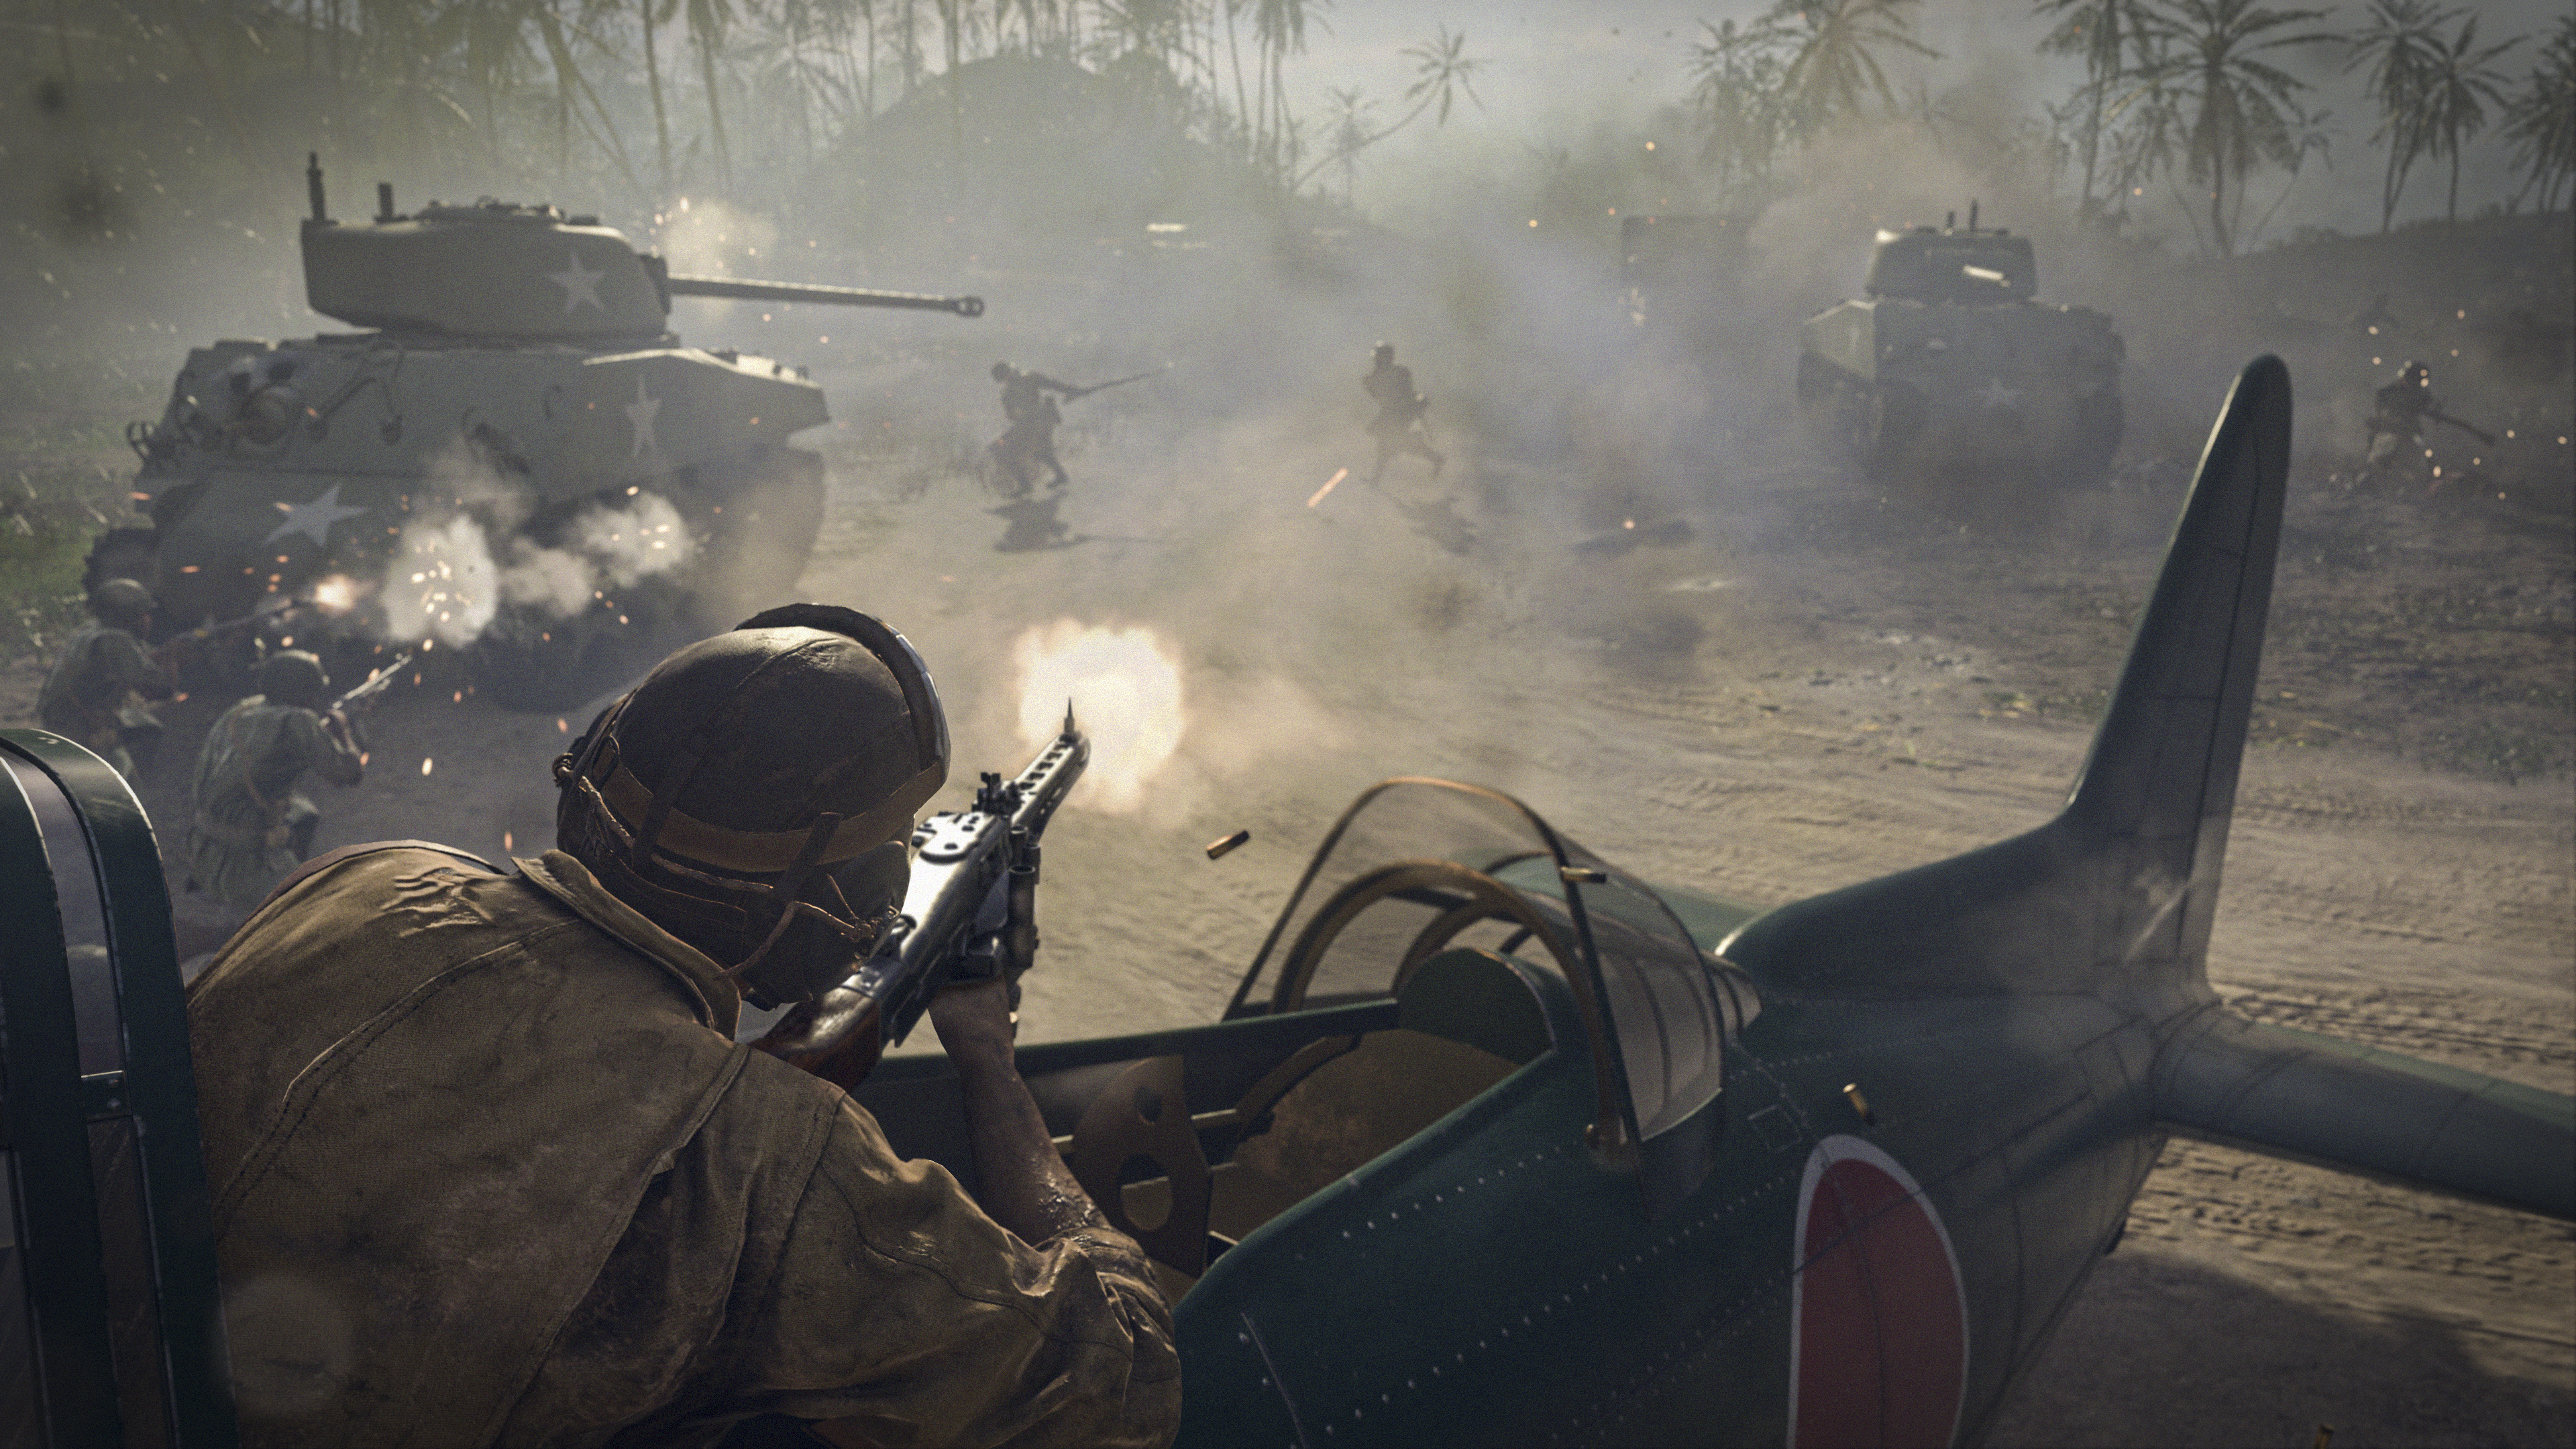 Call of Duty Vanguard екранна снимка, показваща пилот стрелящ с оръжие от самолет